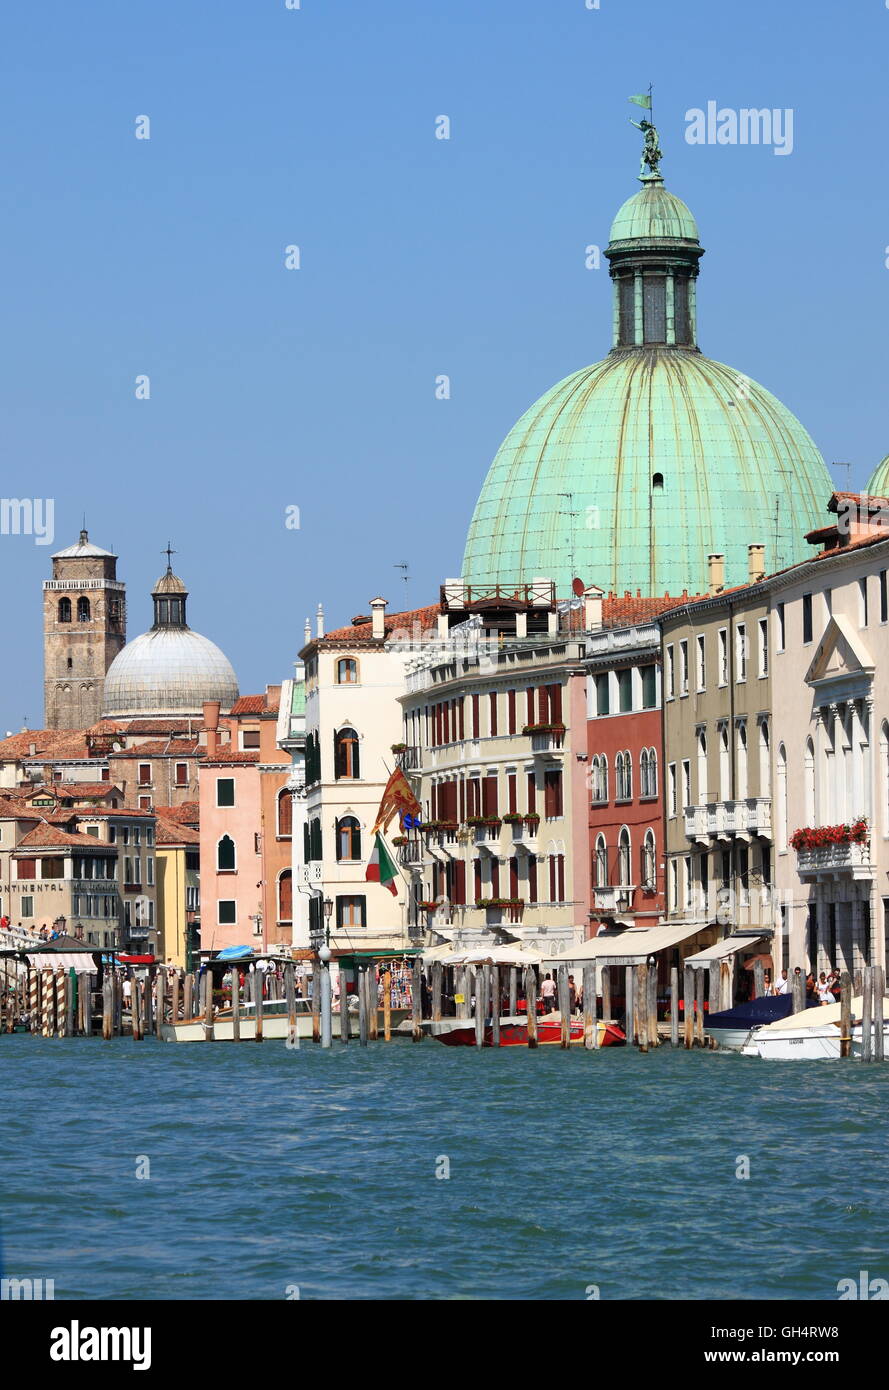 Venedig, Italien - 5. August: malerische Aussicht auf den Canal Grande am 5. August 2012 in Venedig, Italien. Mehr als 20 Millionen Touristen kommen zu v Stockfoto